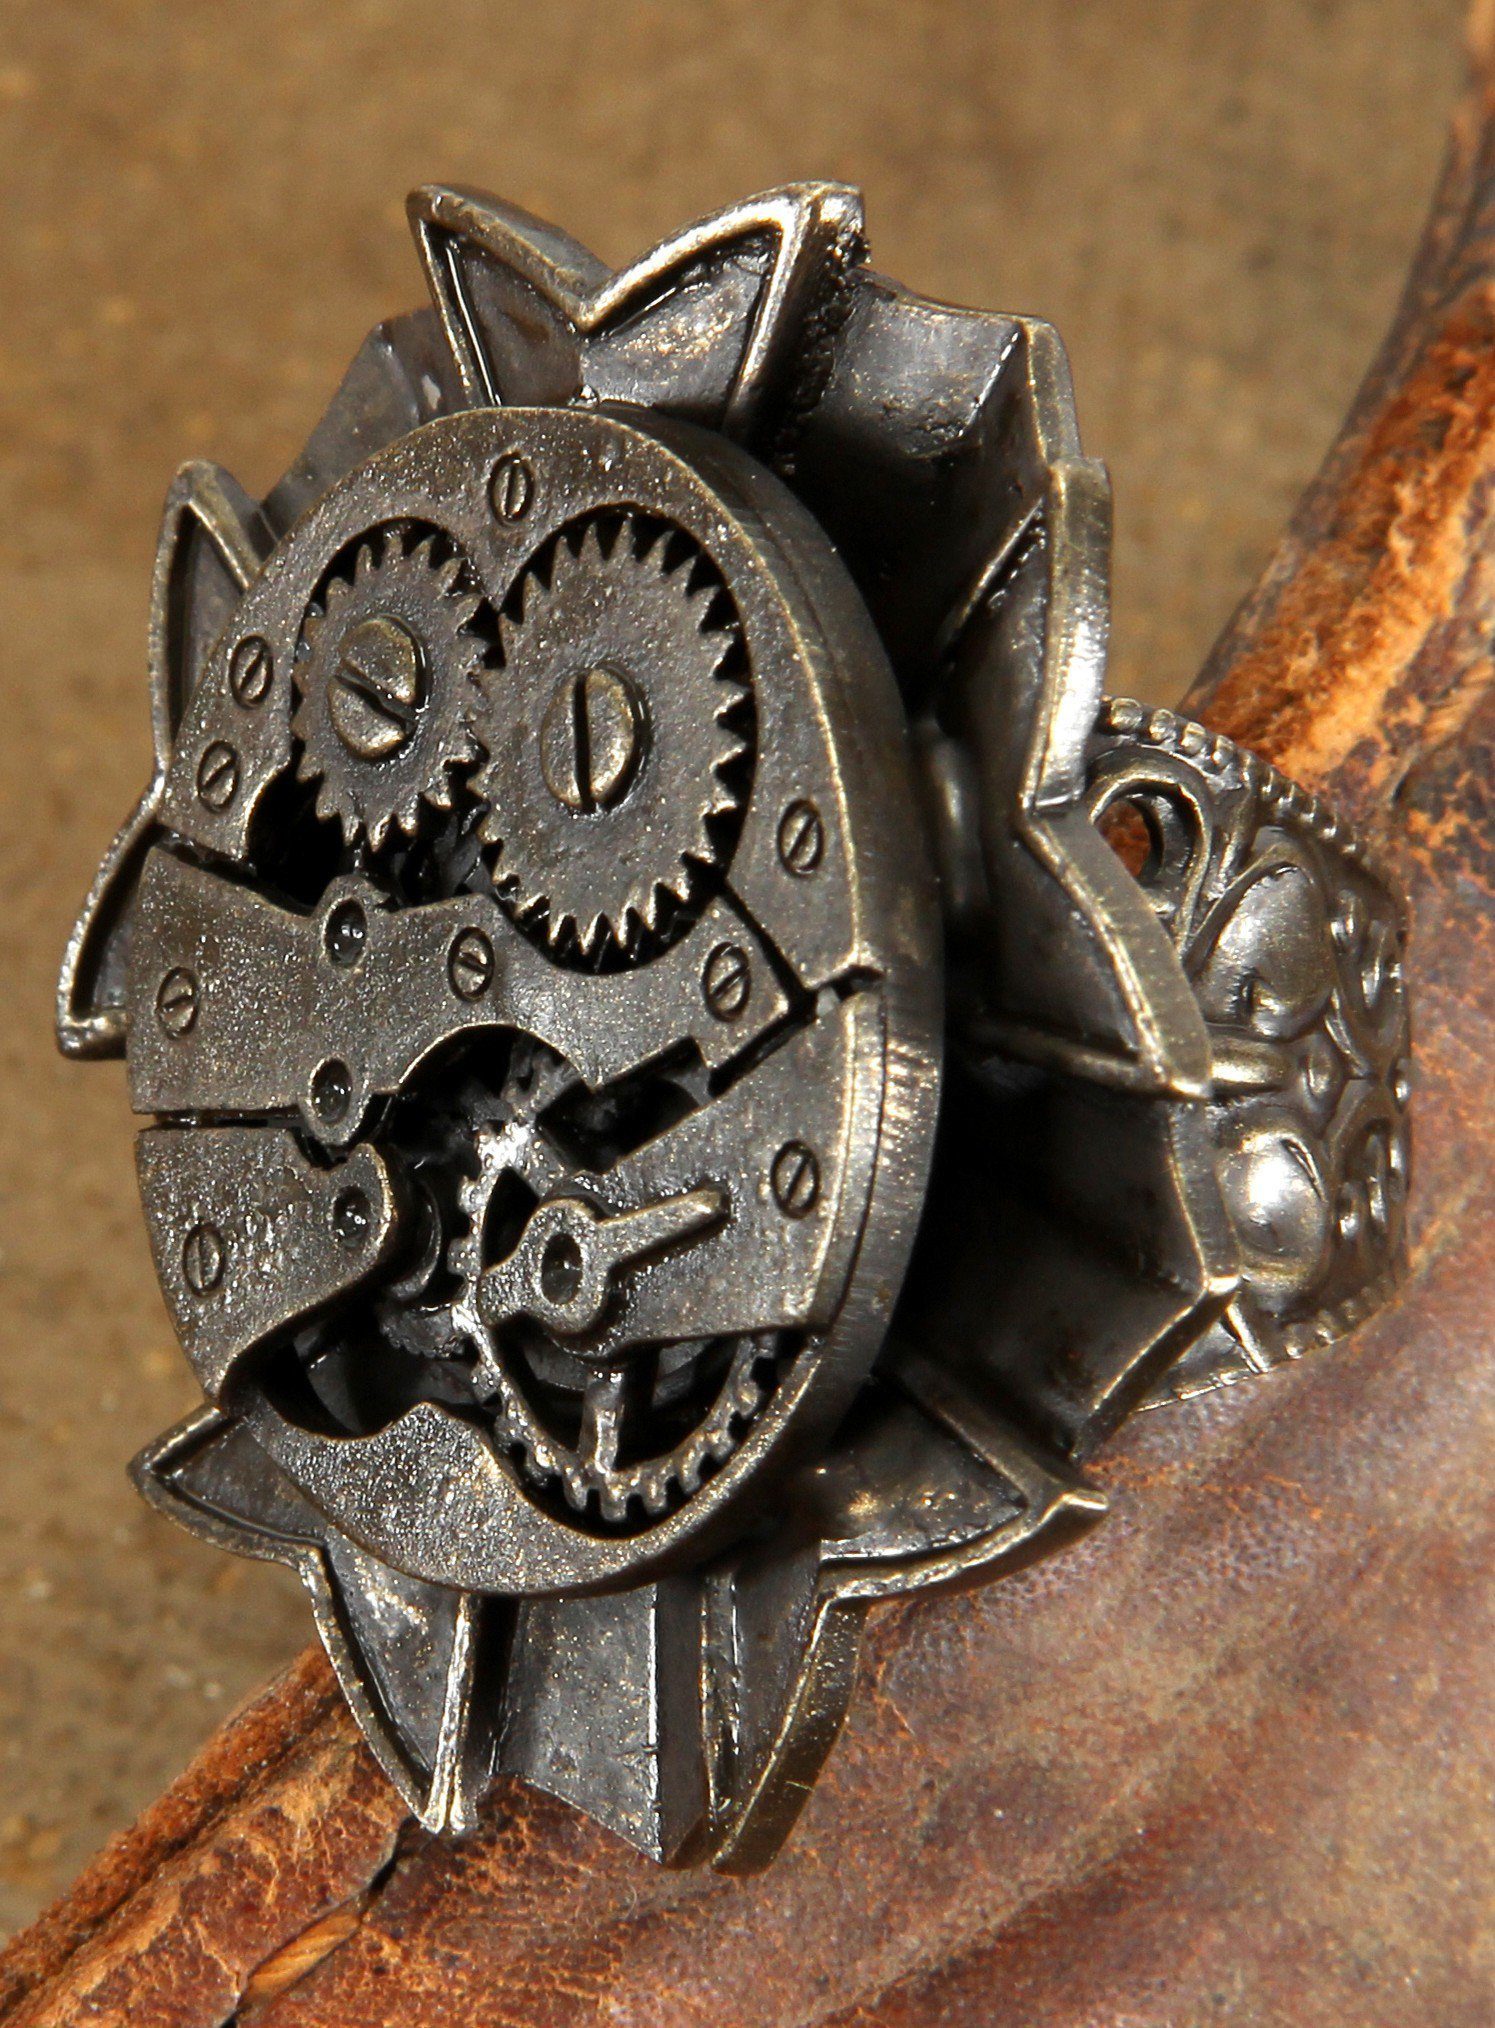 Elope Kostüm Steampunk Ring Uhrwerk antik, Elegant schmückendes Accessoire in charakteristischer Steampunk-Optik